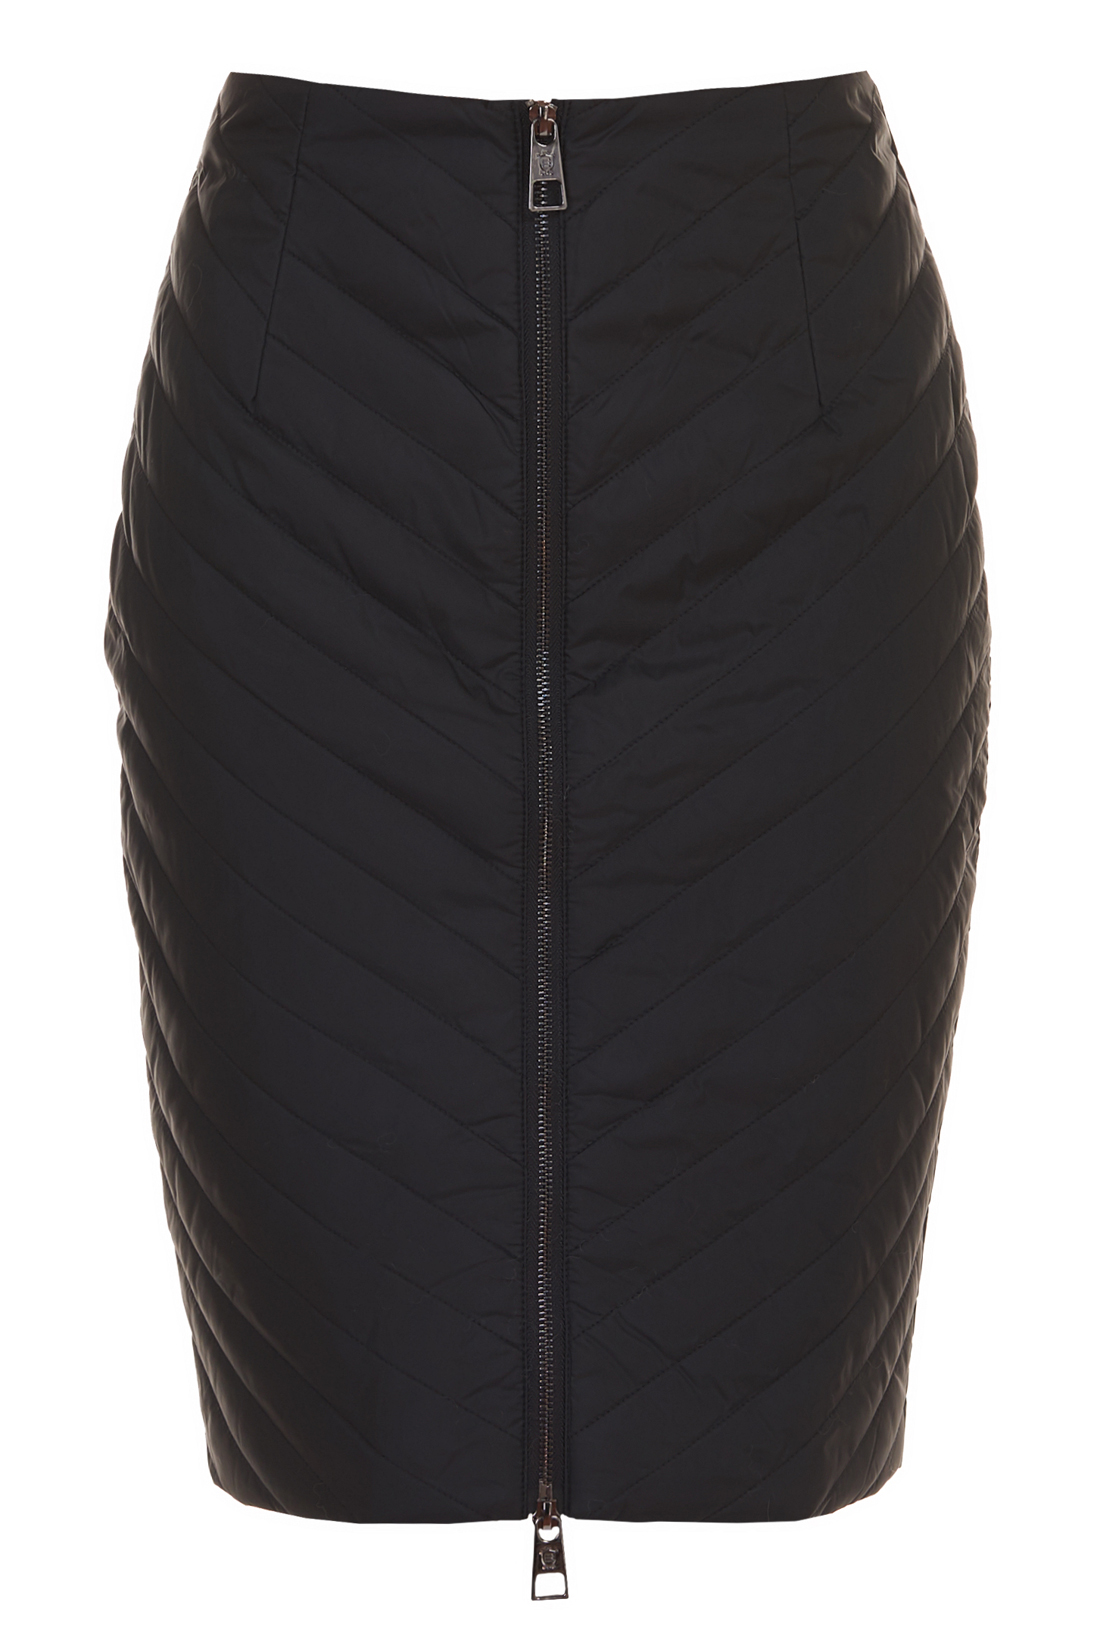 Утеплённая юбка (арт. baon B477502), размер XL, цвет черный Утеплённая юбка (арт. baon B477502) - фото 3